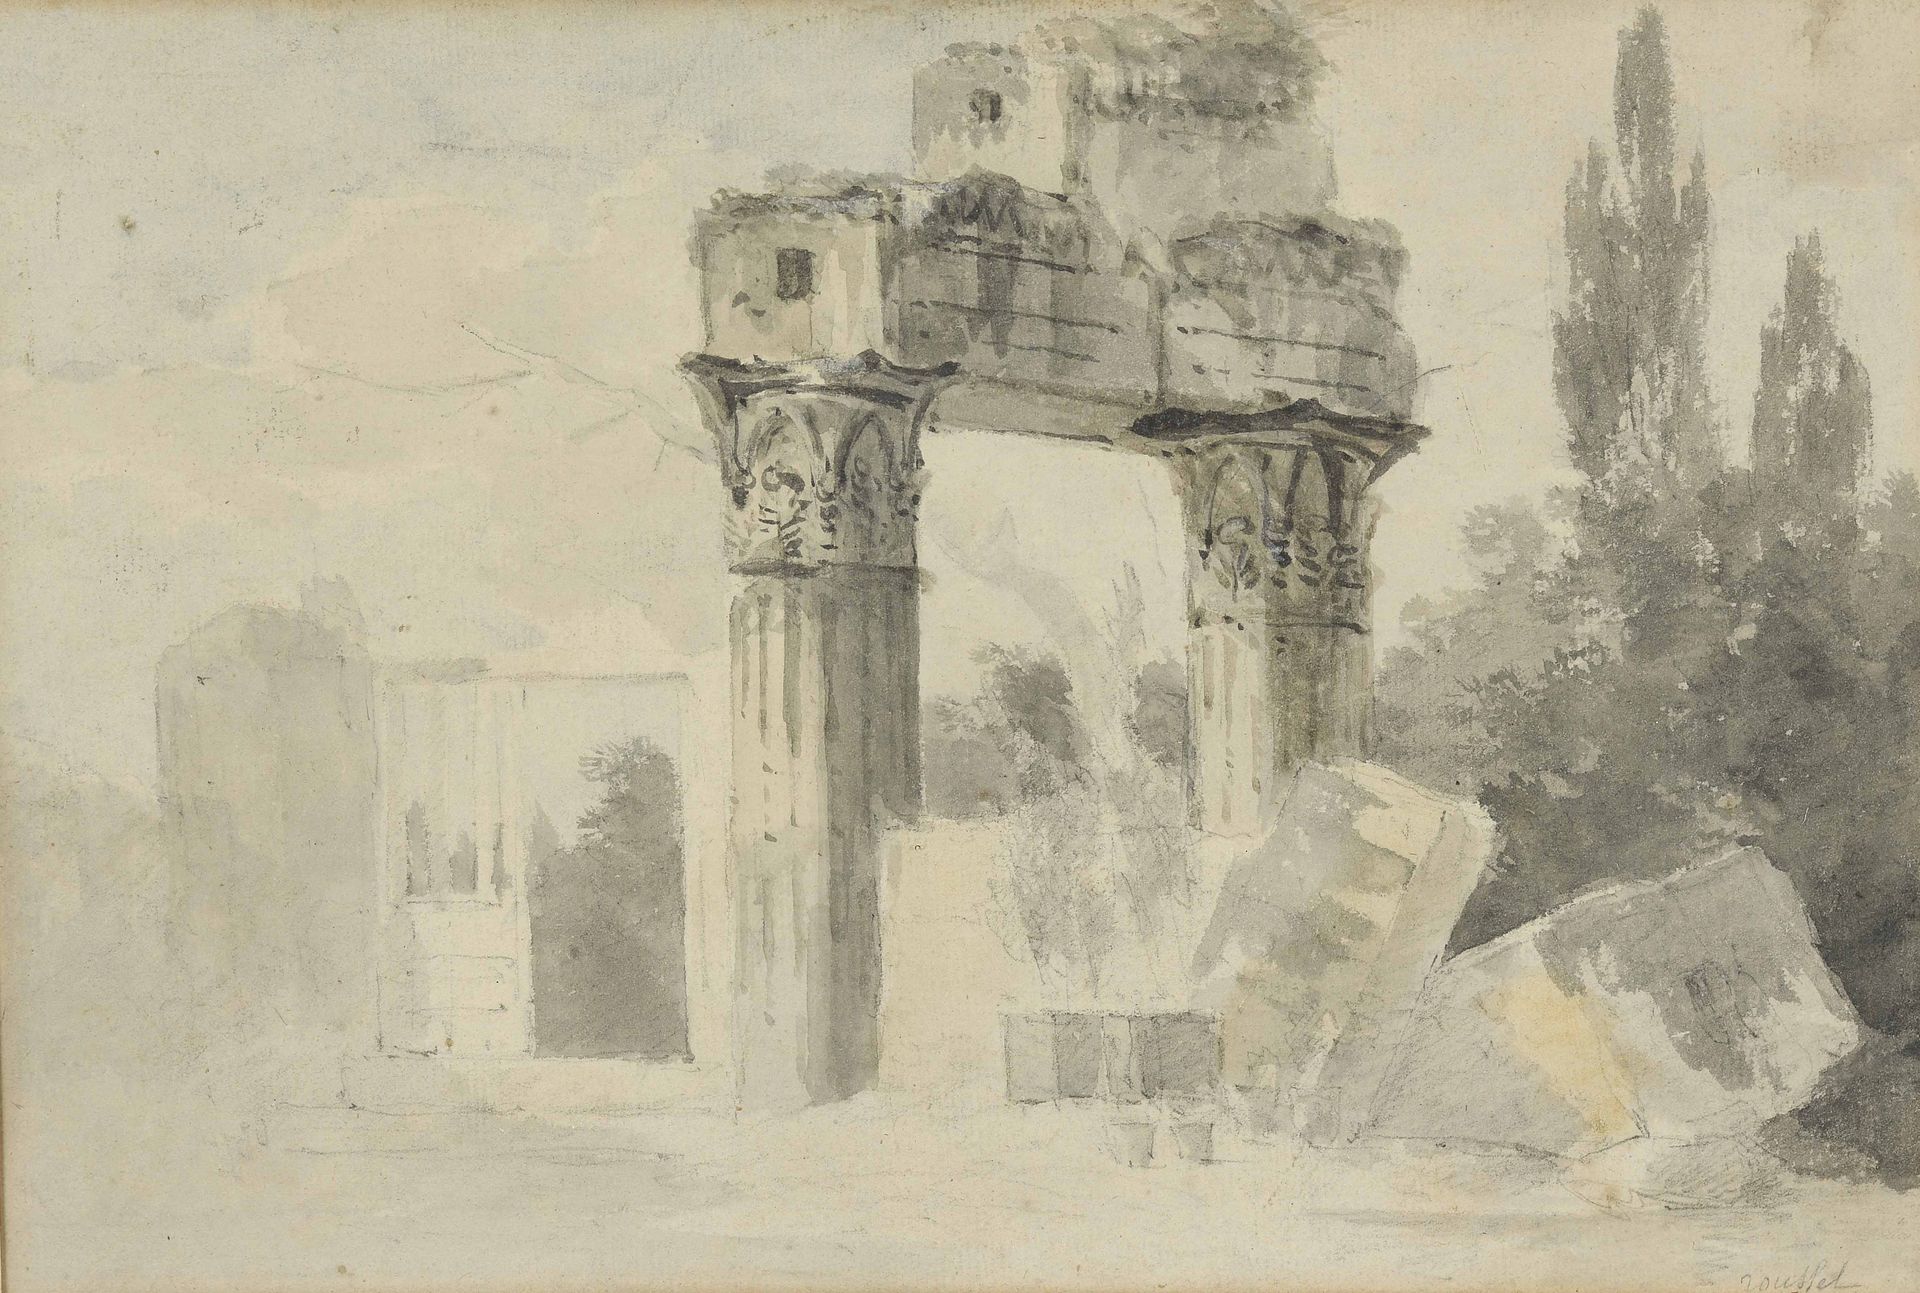 Null ROUSSEL
Ruines
Dessin au lavis, signé en bas à droite.
18,3 x 26,8 cm